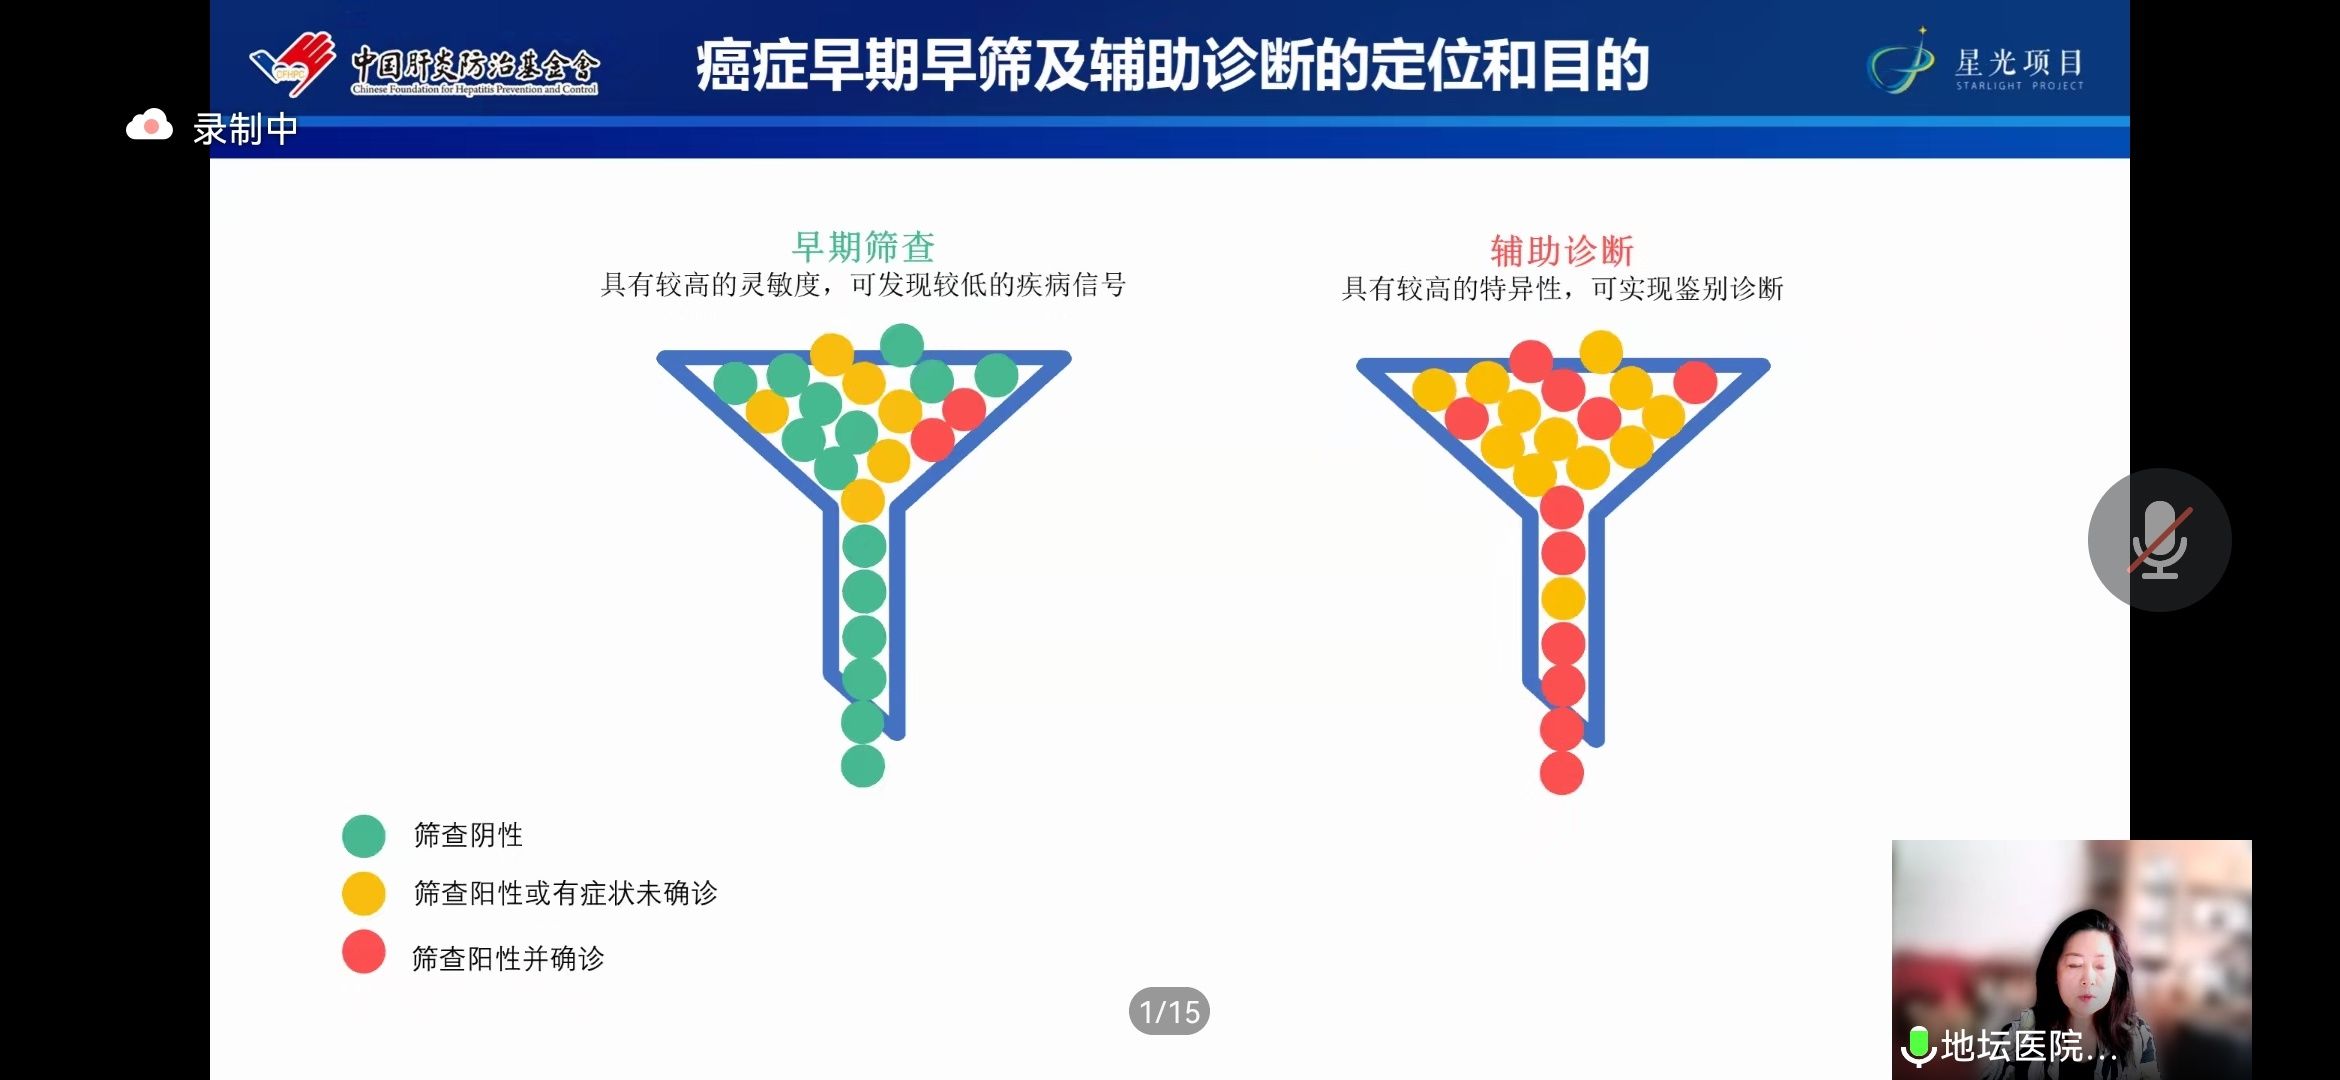 中国肝炎防治基金会|马烈教授《早癌筛查阴性病例分享》